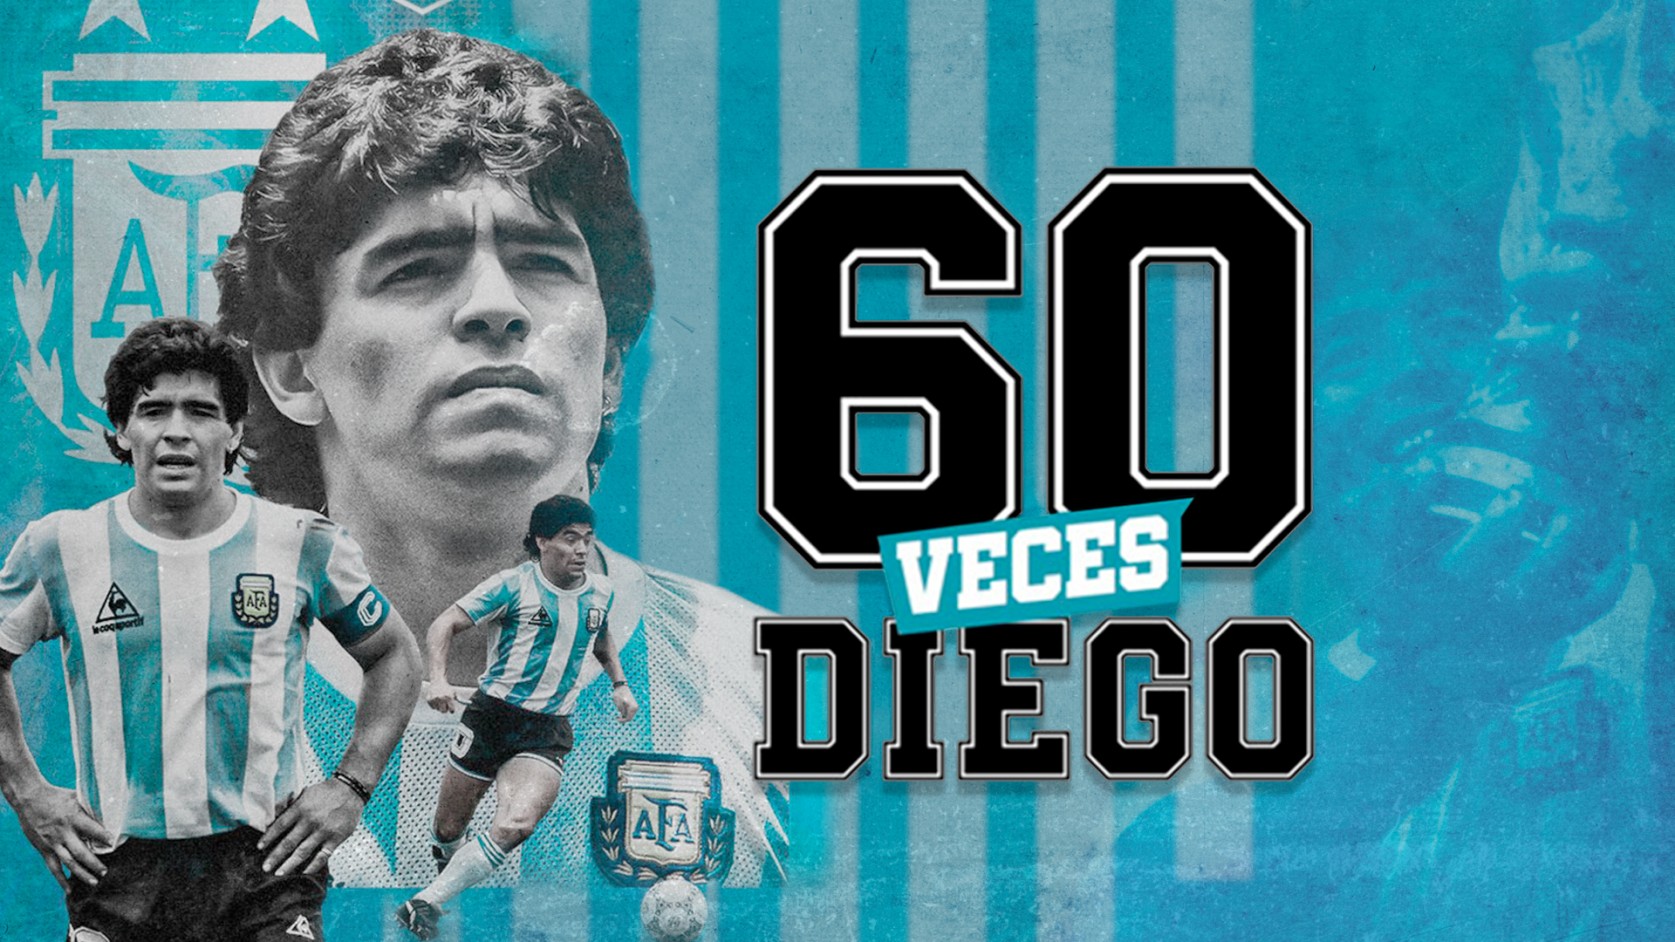 60 Veces Diego